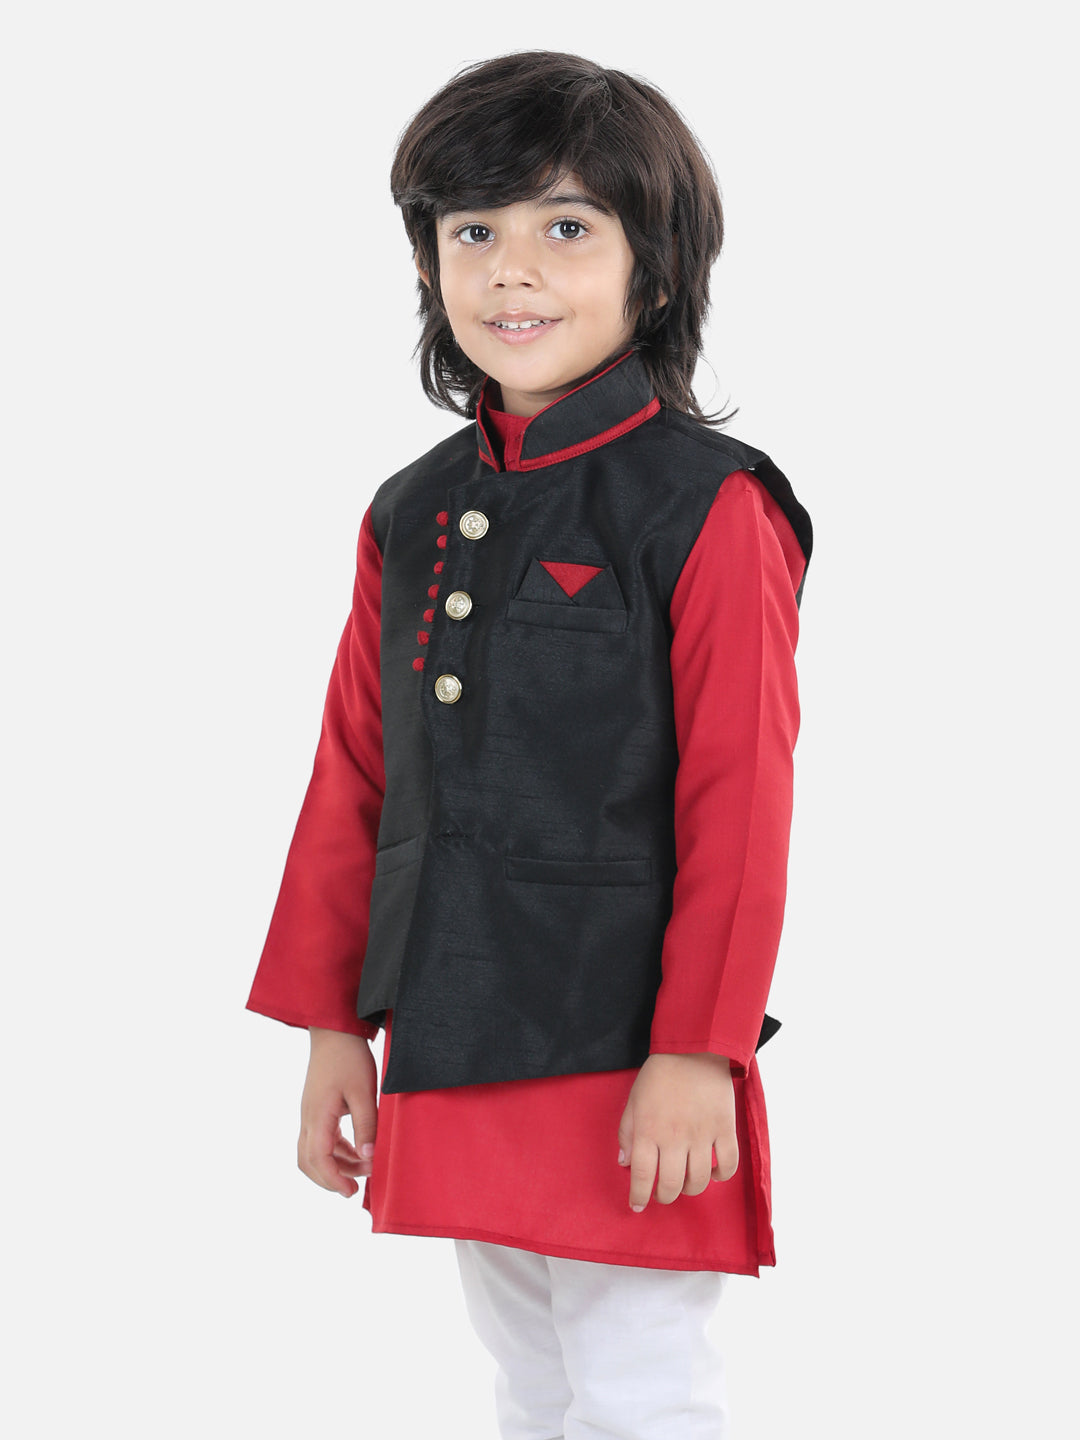 BownBee Sleeveless Solid Indo Ethnic Party Waistcoat Jacket - Black